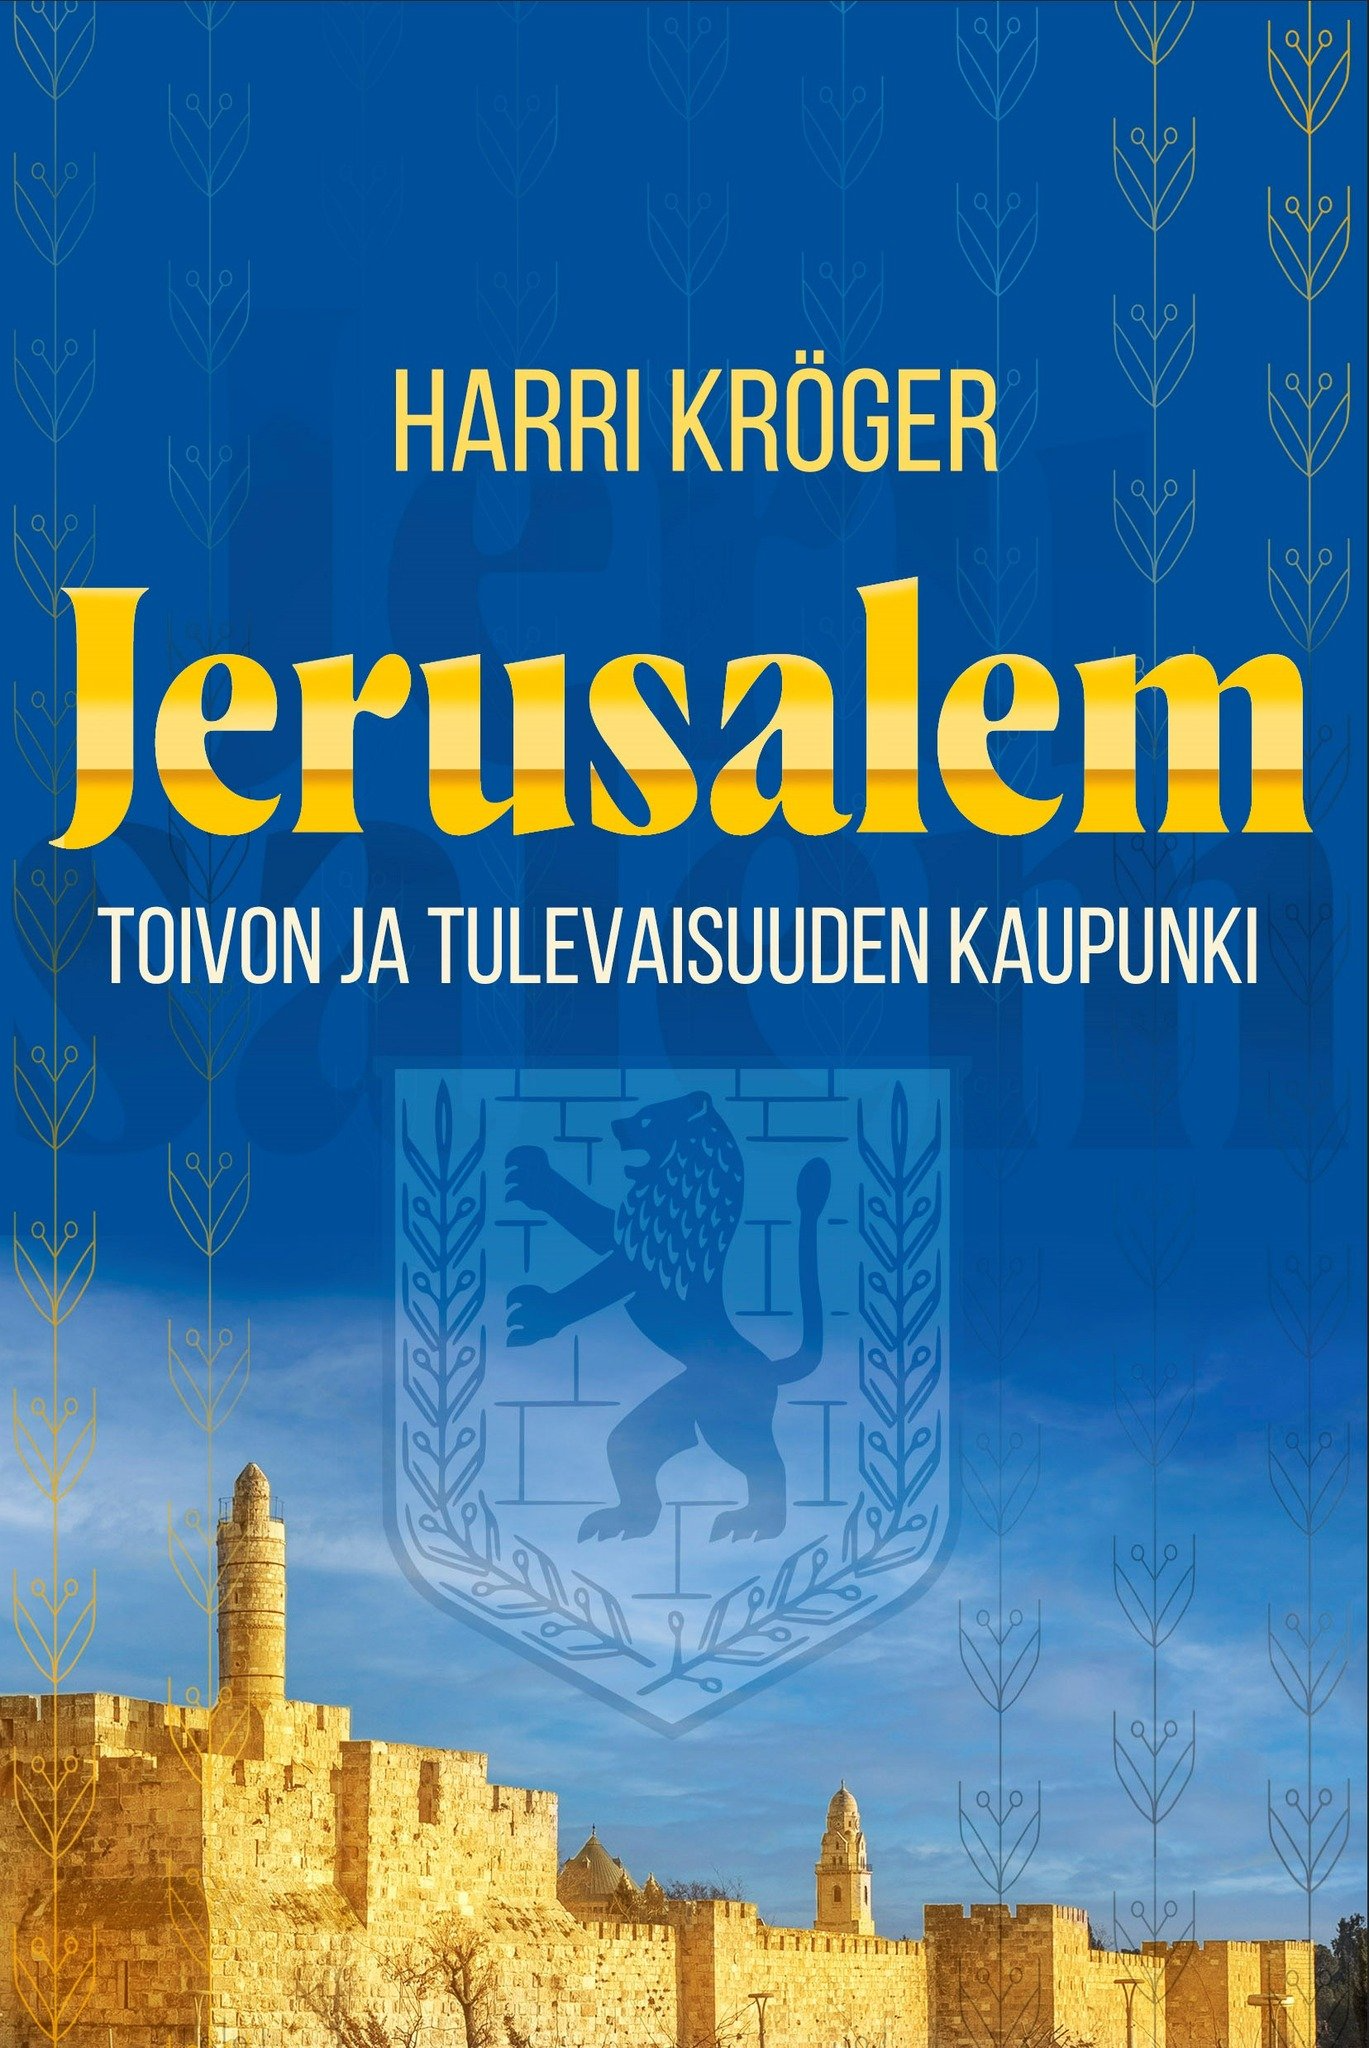 Jerusalem, toivon ja tulevaisuuden kaupunki